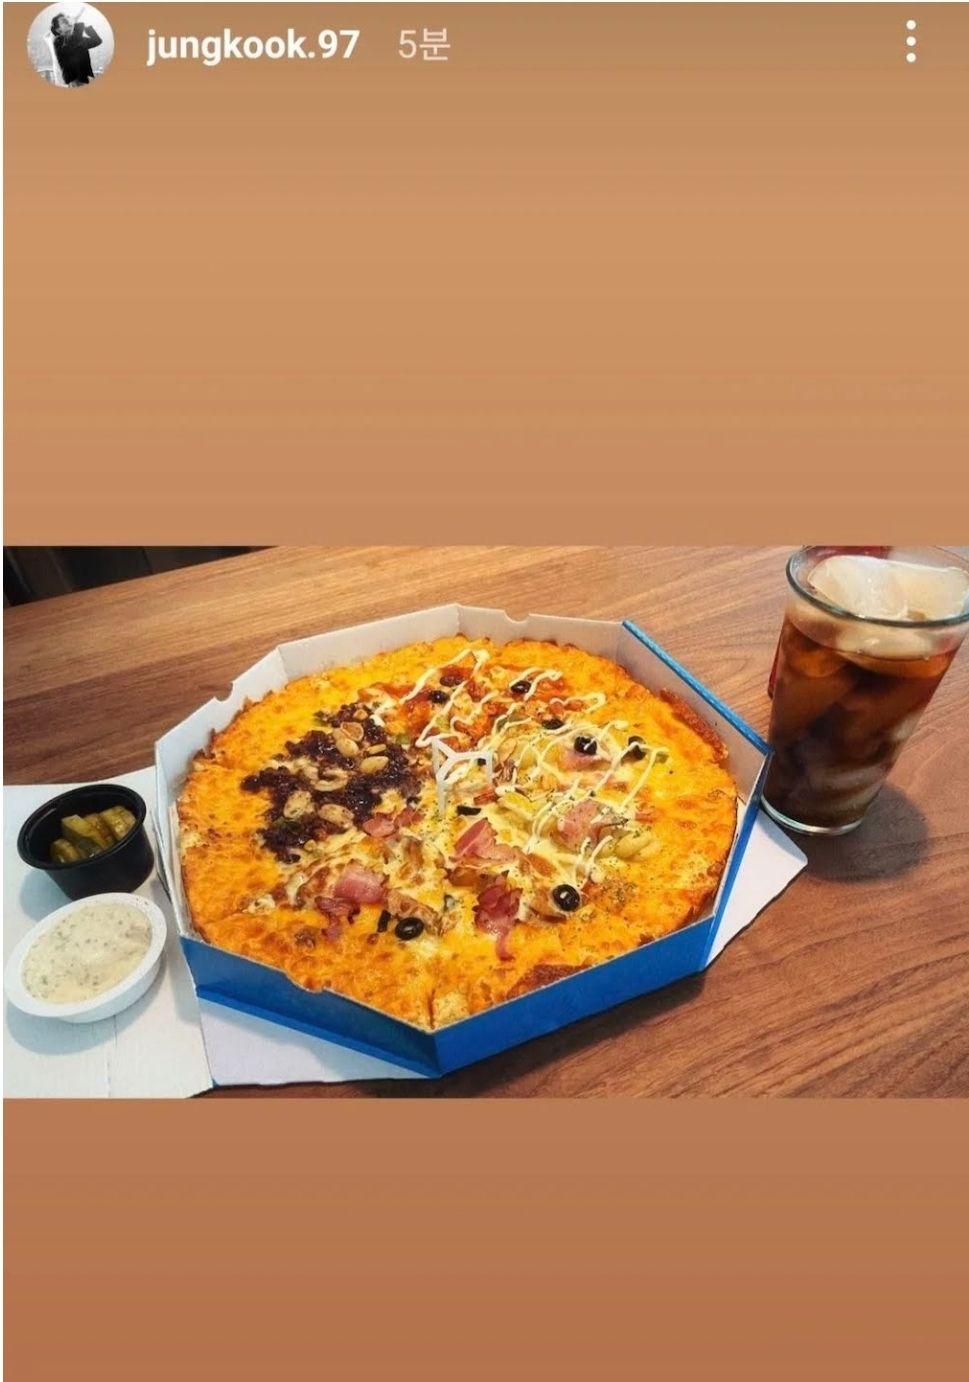 Postingan pizza yang dimakan Jungkook BTS./Instagram/@jungkook.97